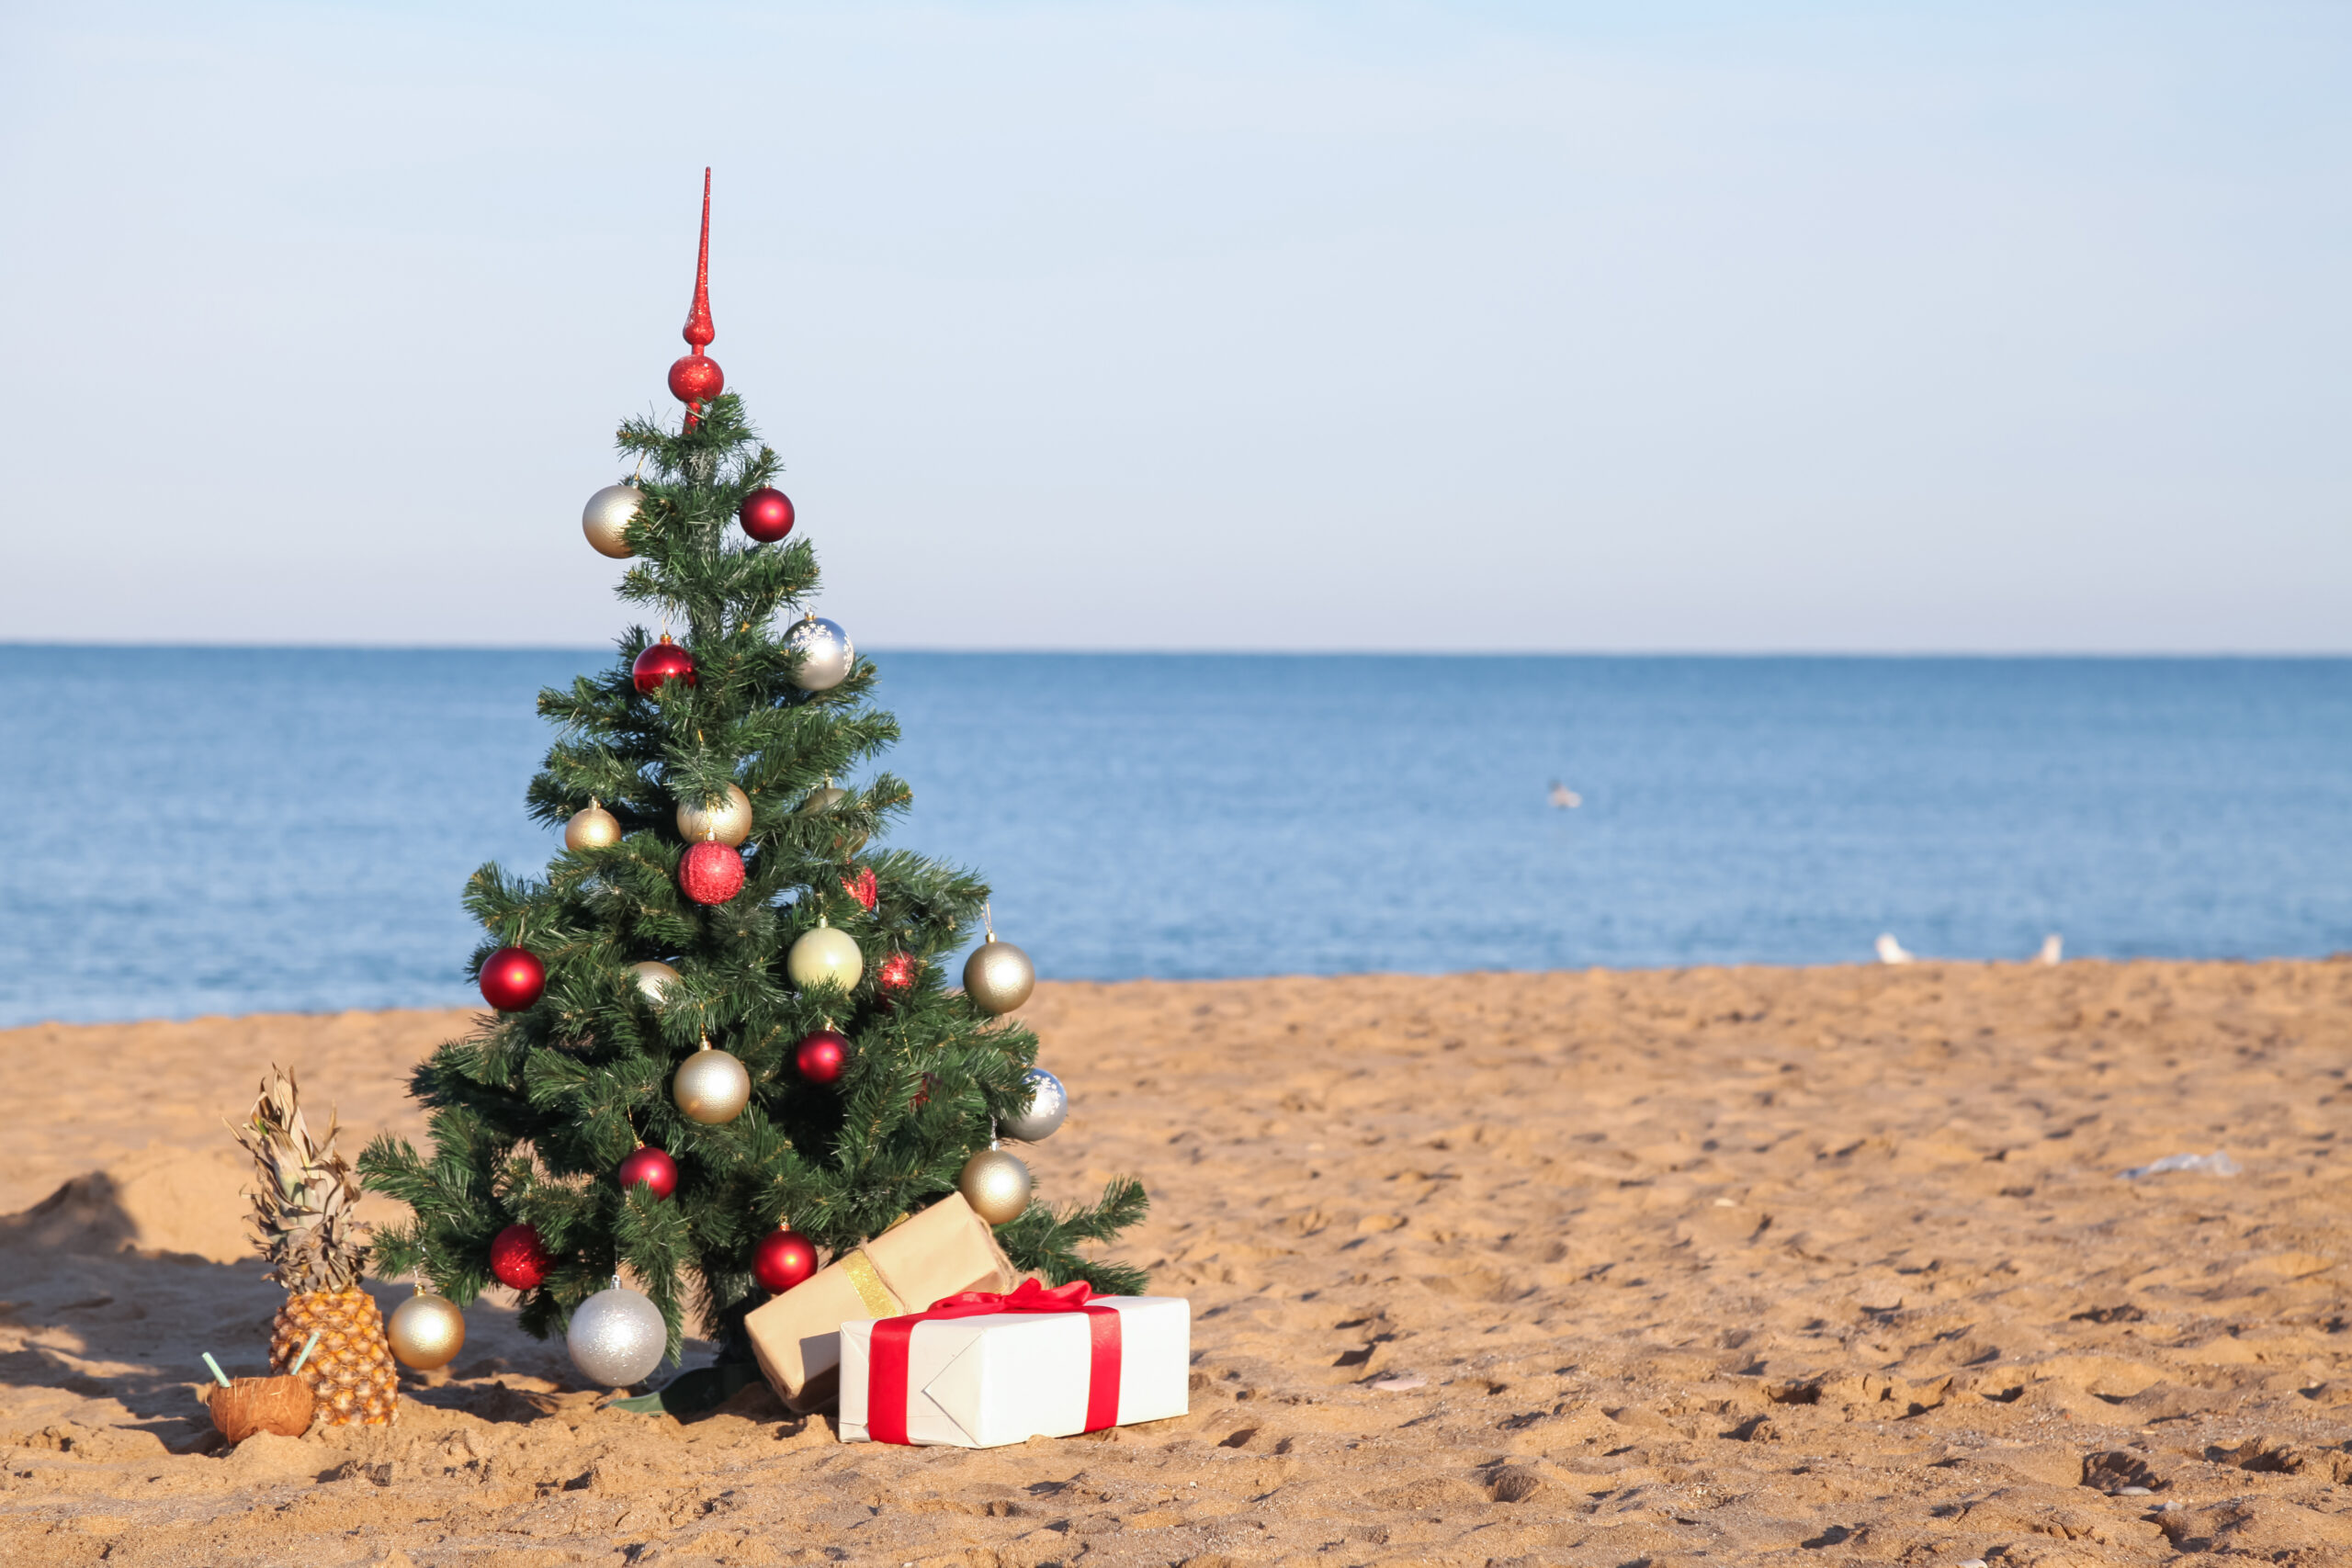 Christmas tree on a beach.